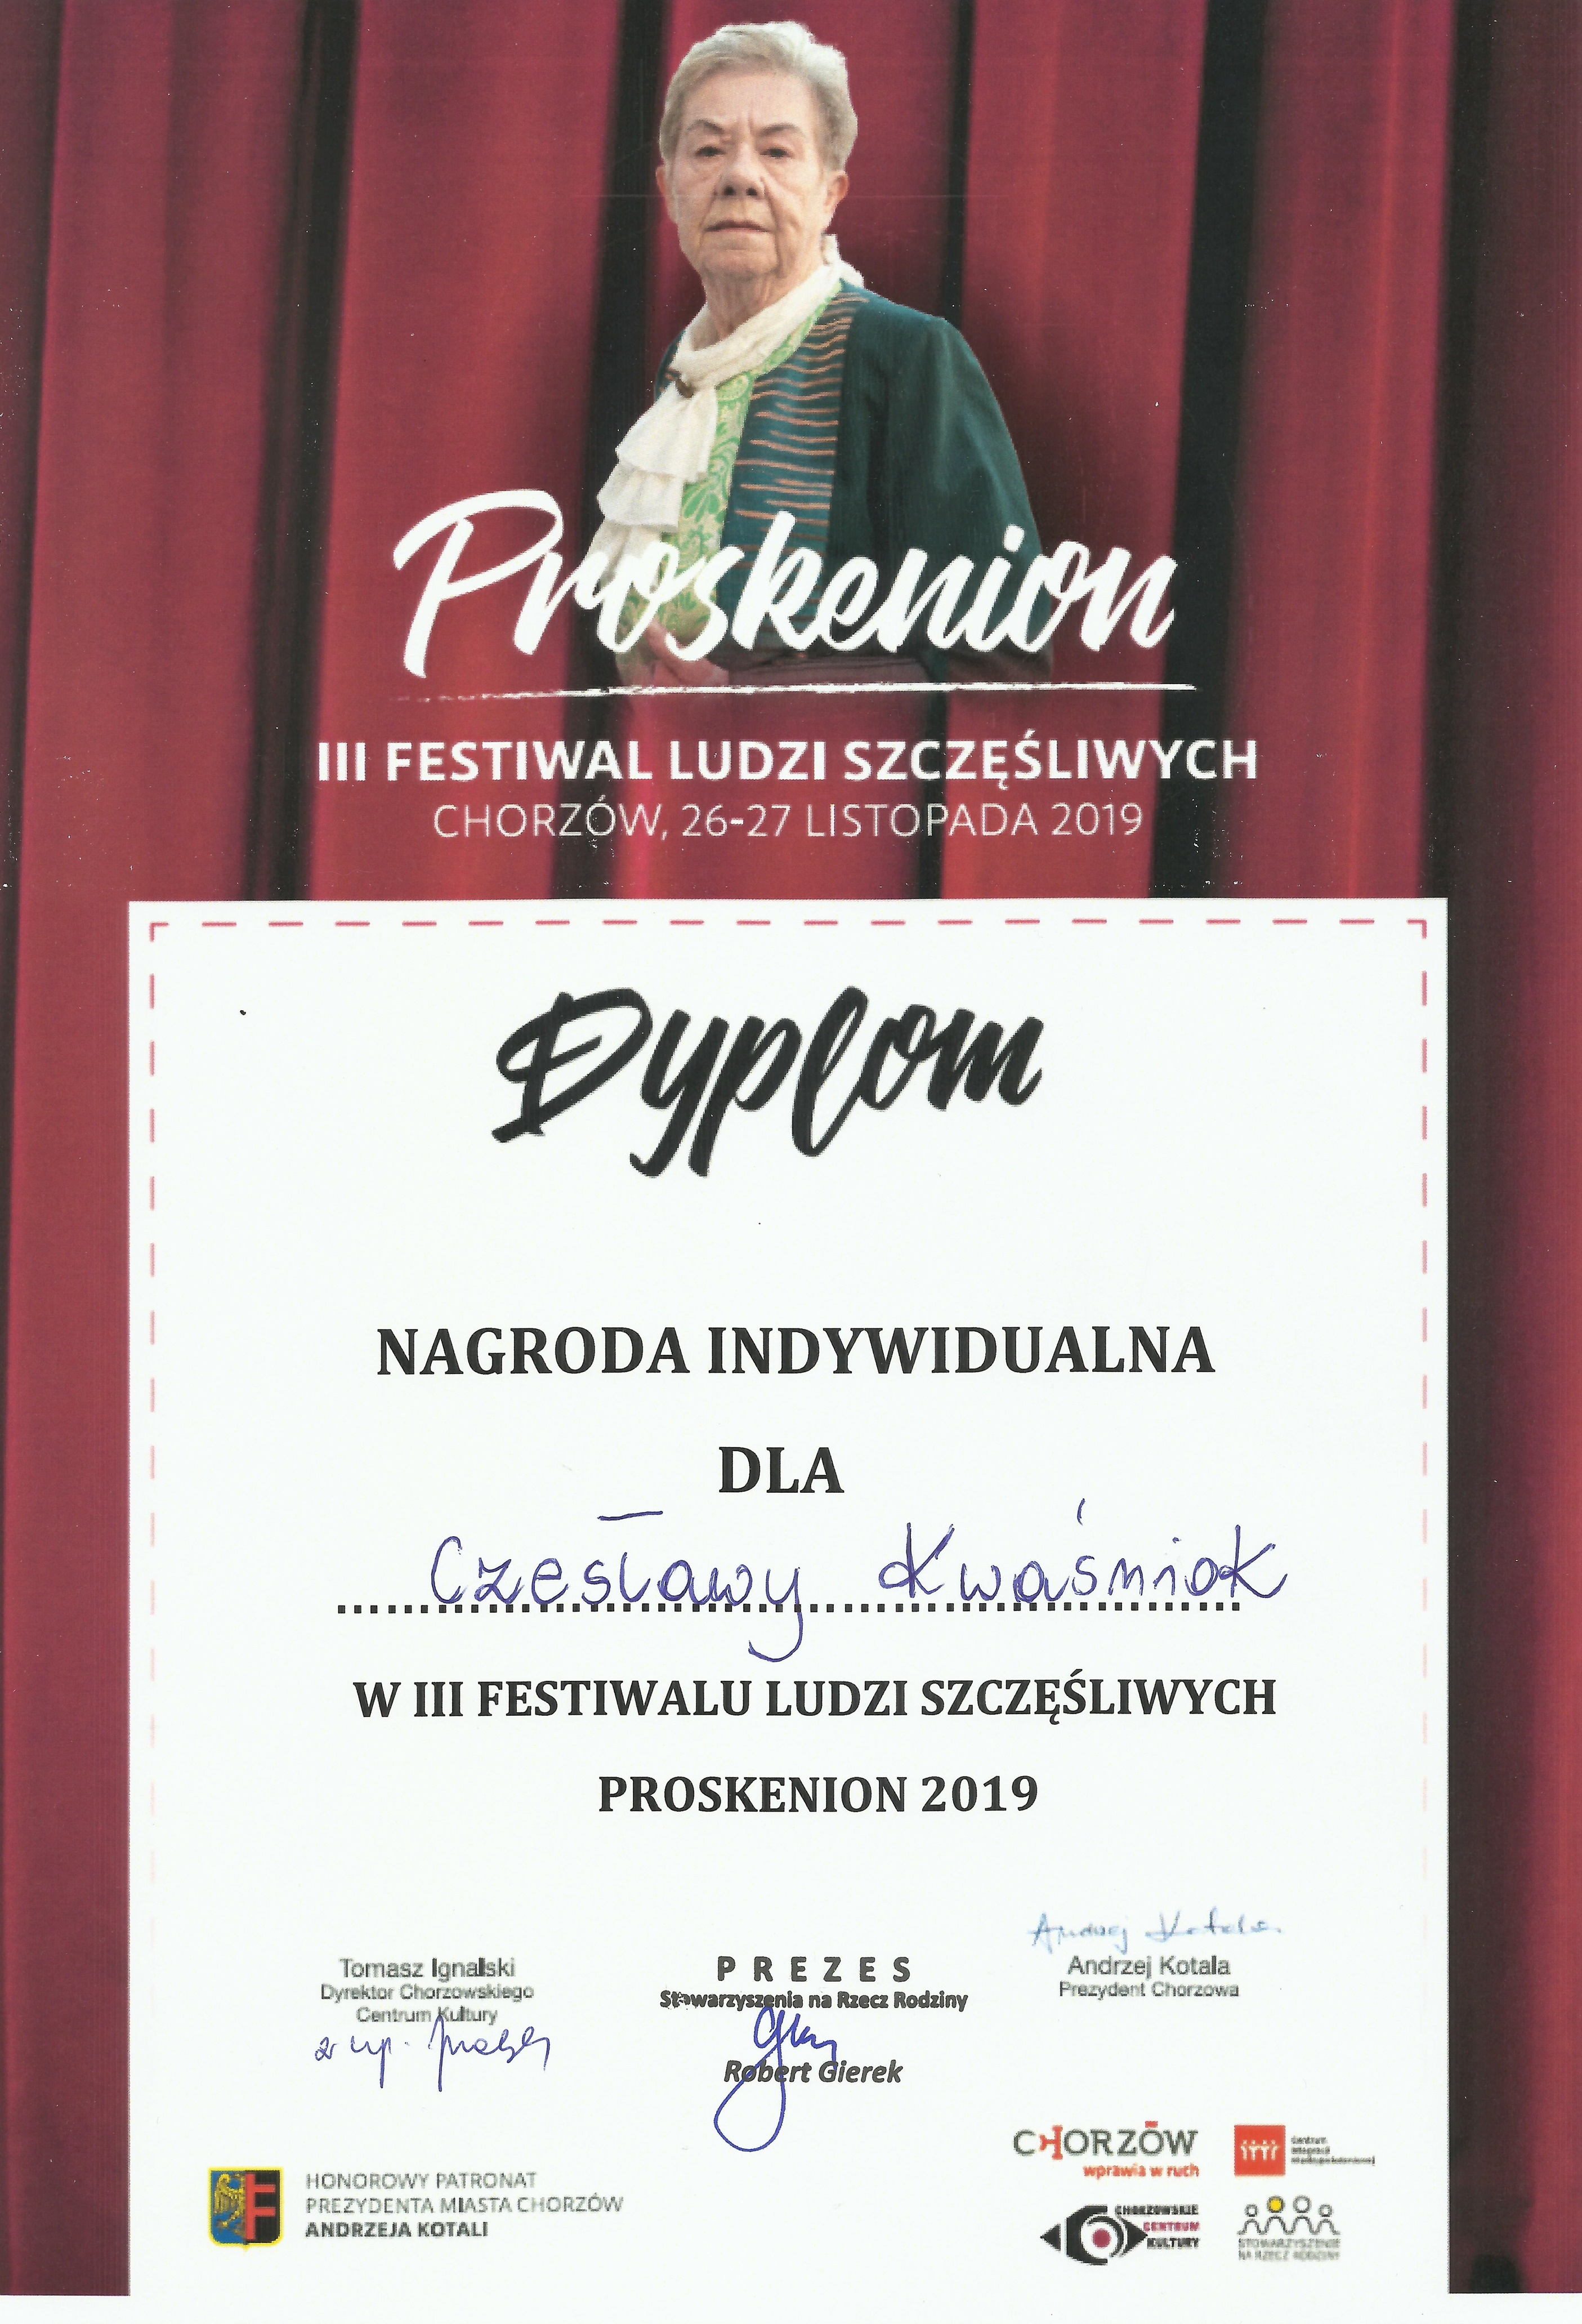 Proskenion - Czesia